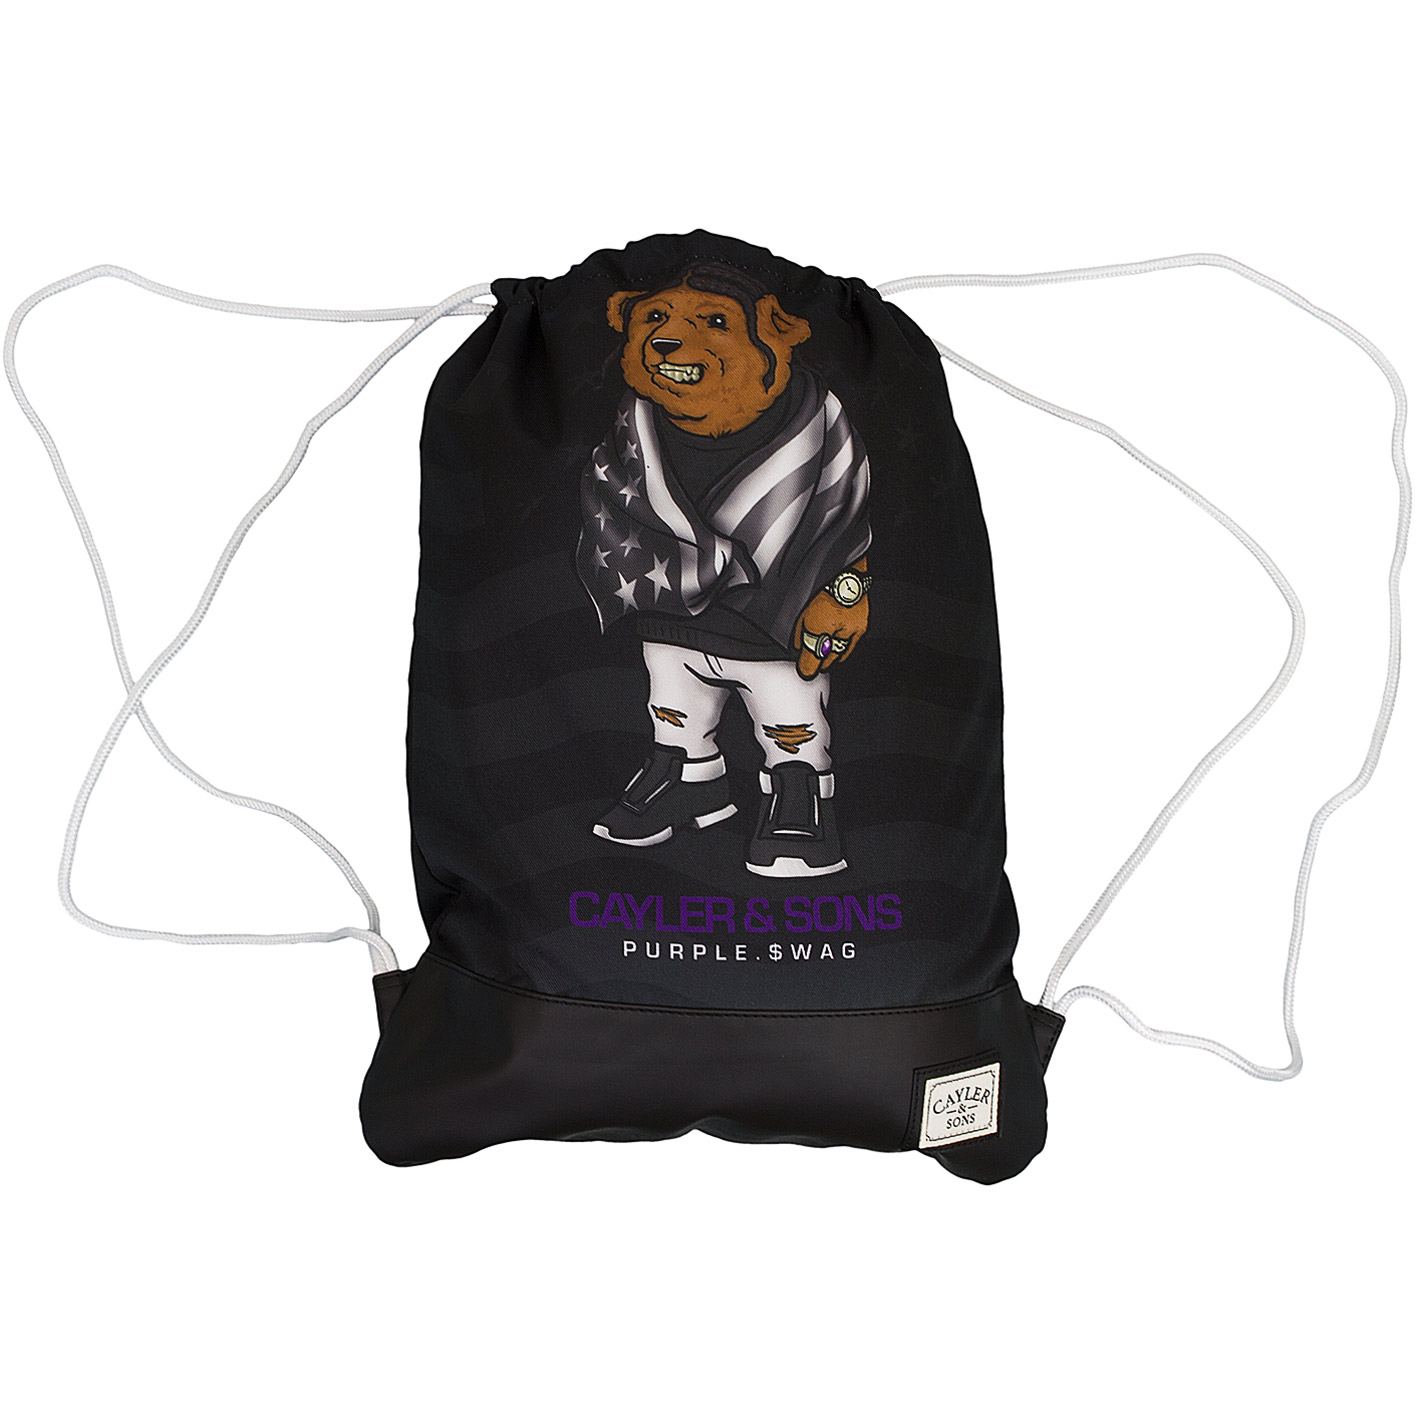 Cayler & Sons Gym Bag White Label Purple Swag schwarz - hier bestellen!